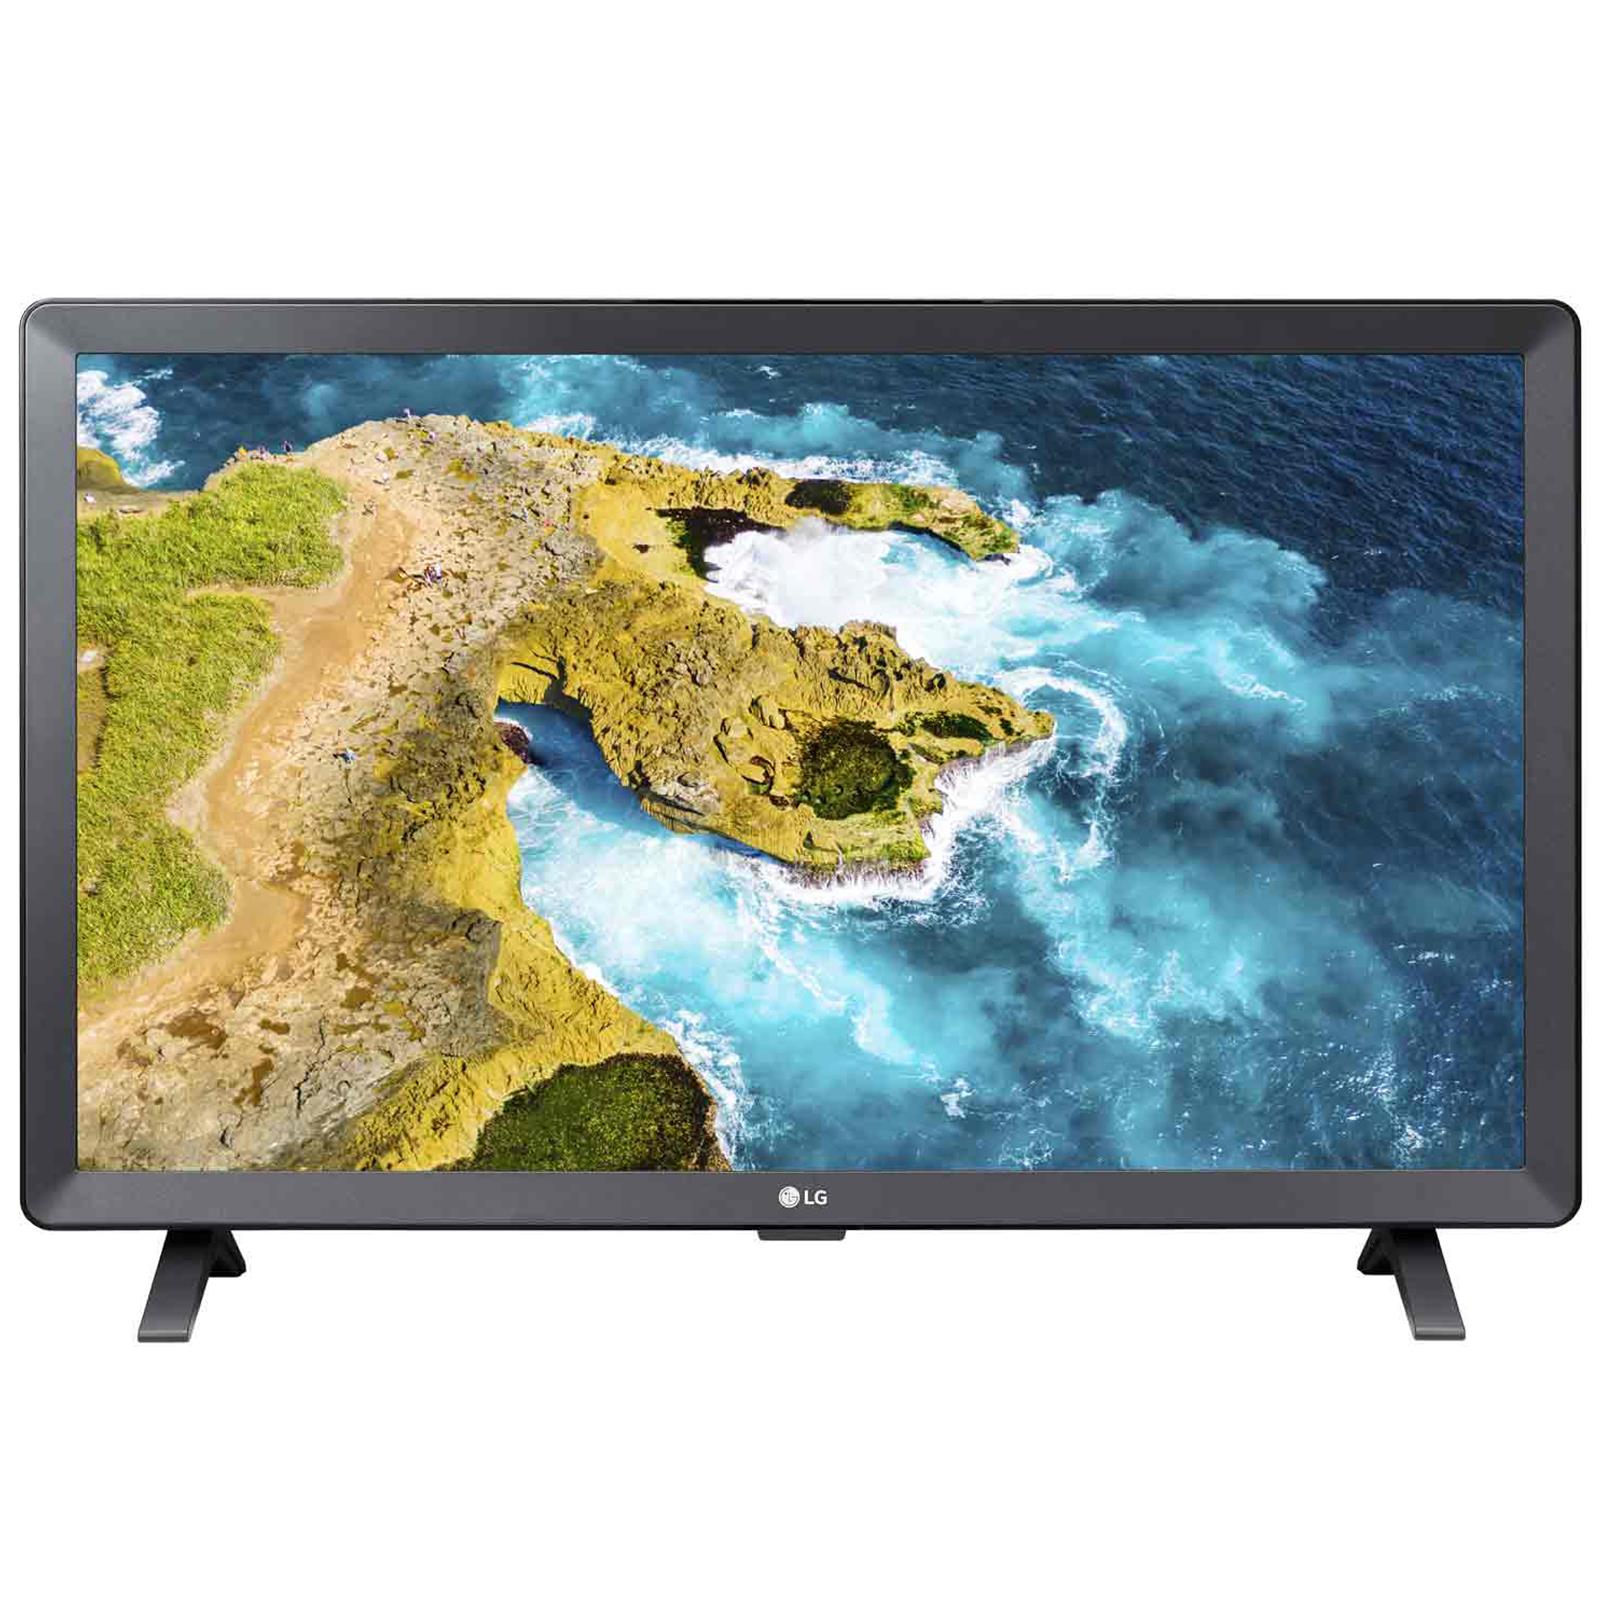 LG 24TQ520S Monitor Tv